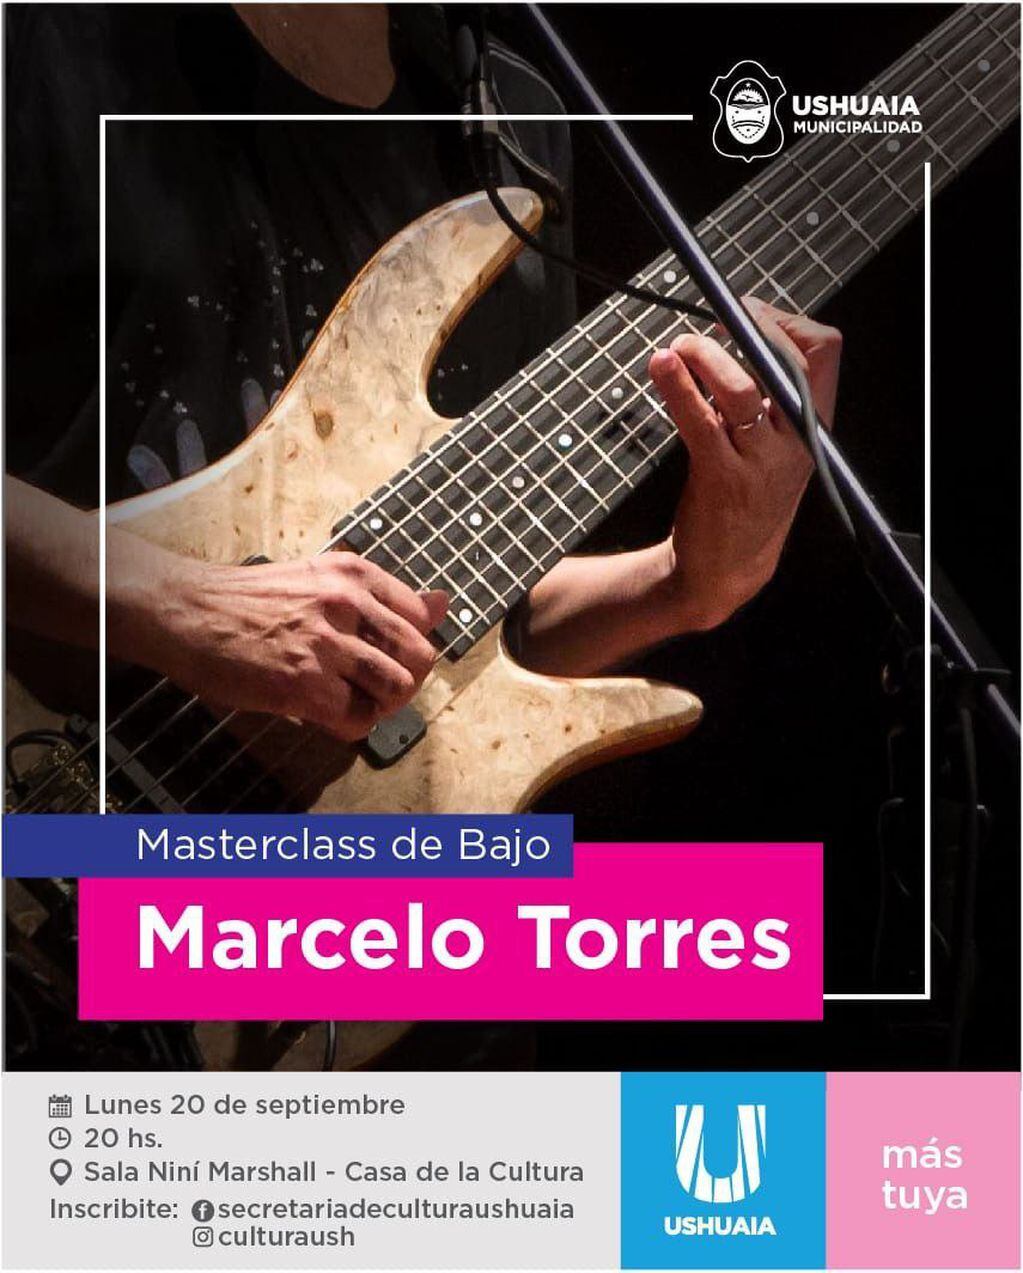 El músico Marcelo Torres brindará un Show y Masterclass